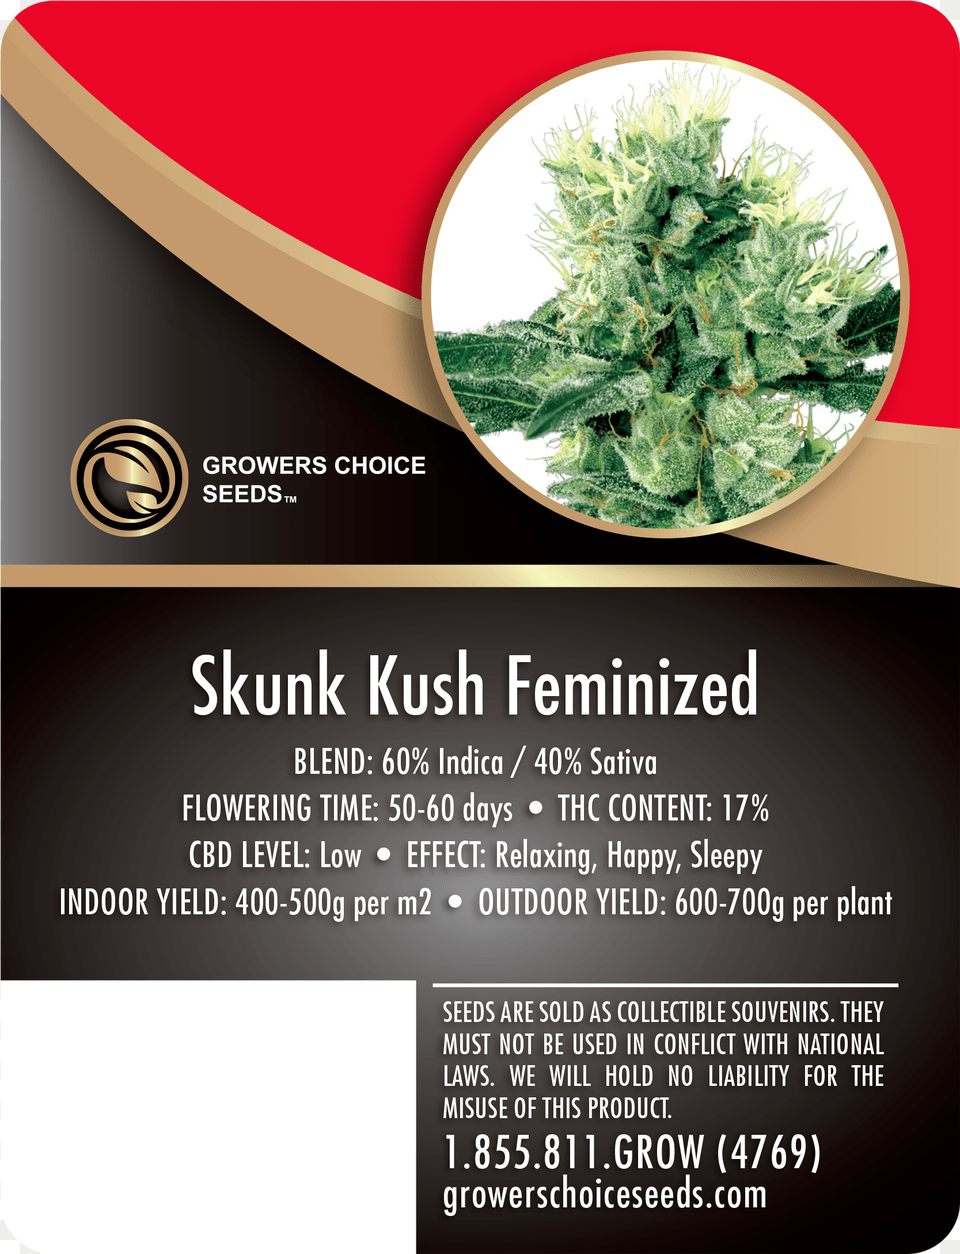 Skunk Kush Feminized Cannabis Seeds Marijuana Bubba Kush Cbd, Advertisement, Herbal, Herbs, Plant Png Image